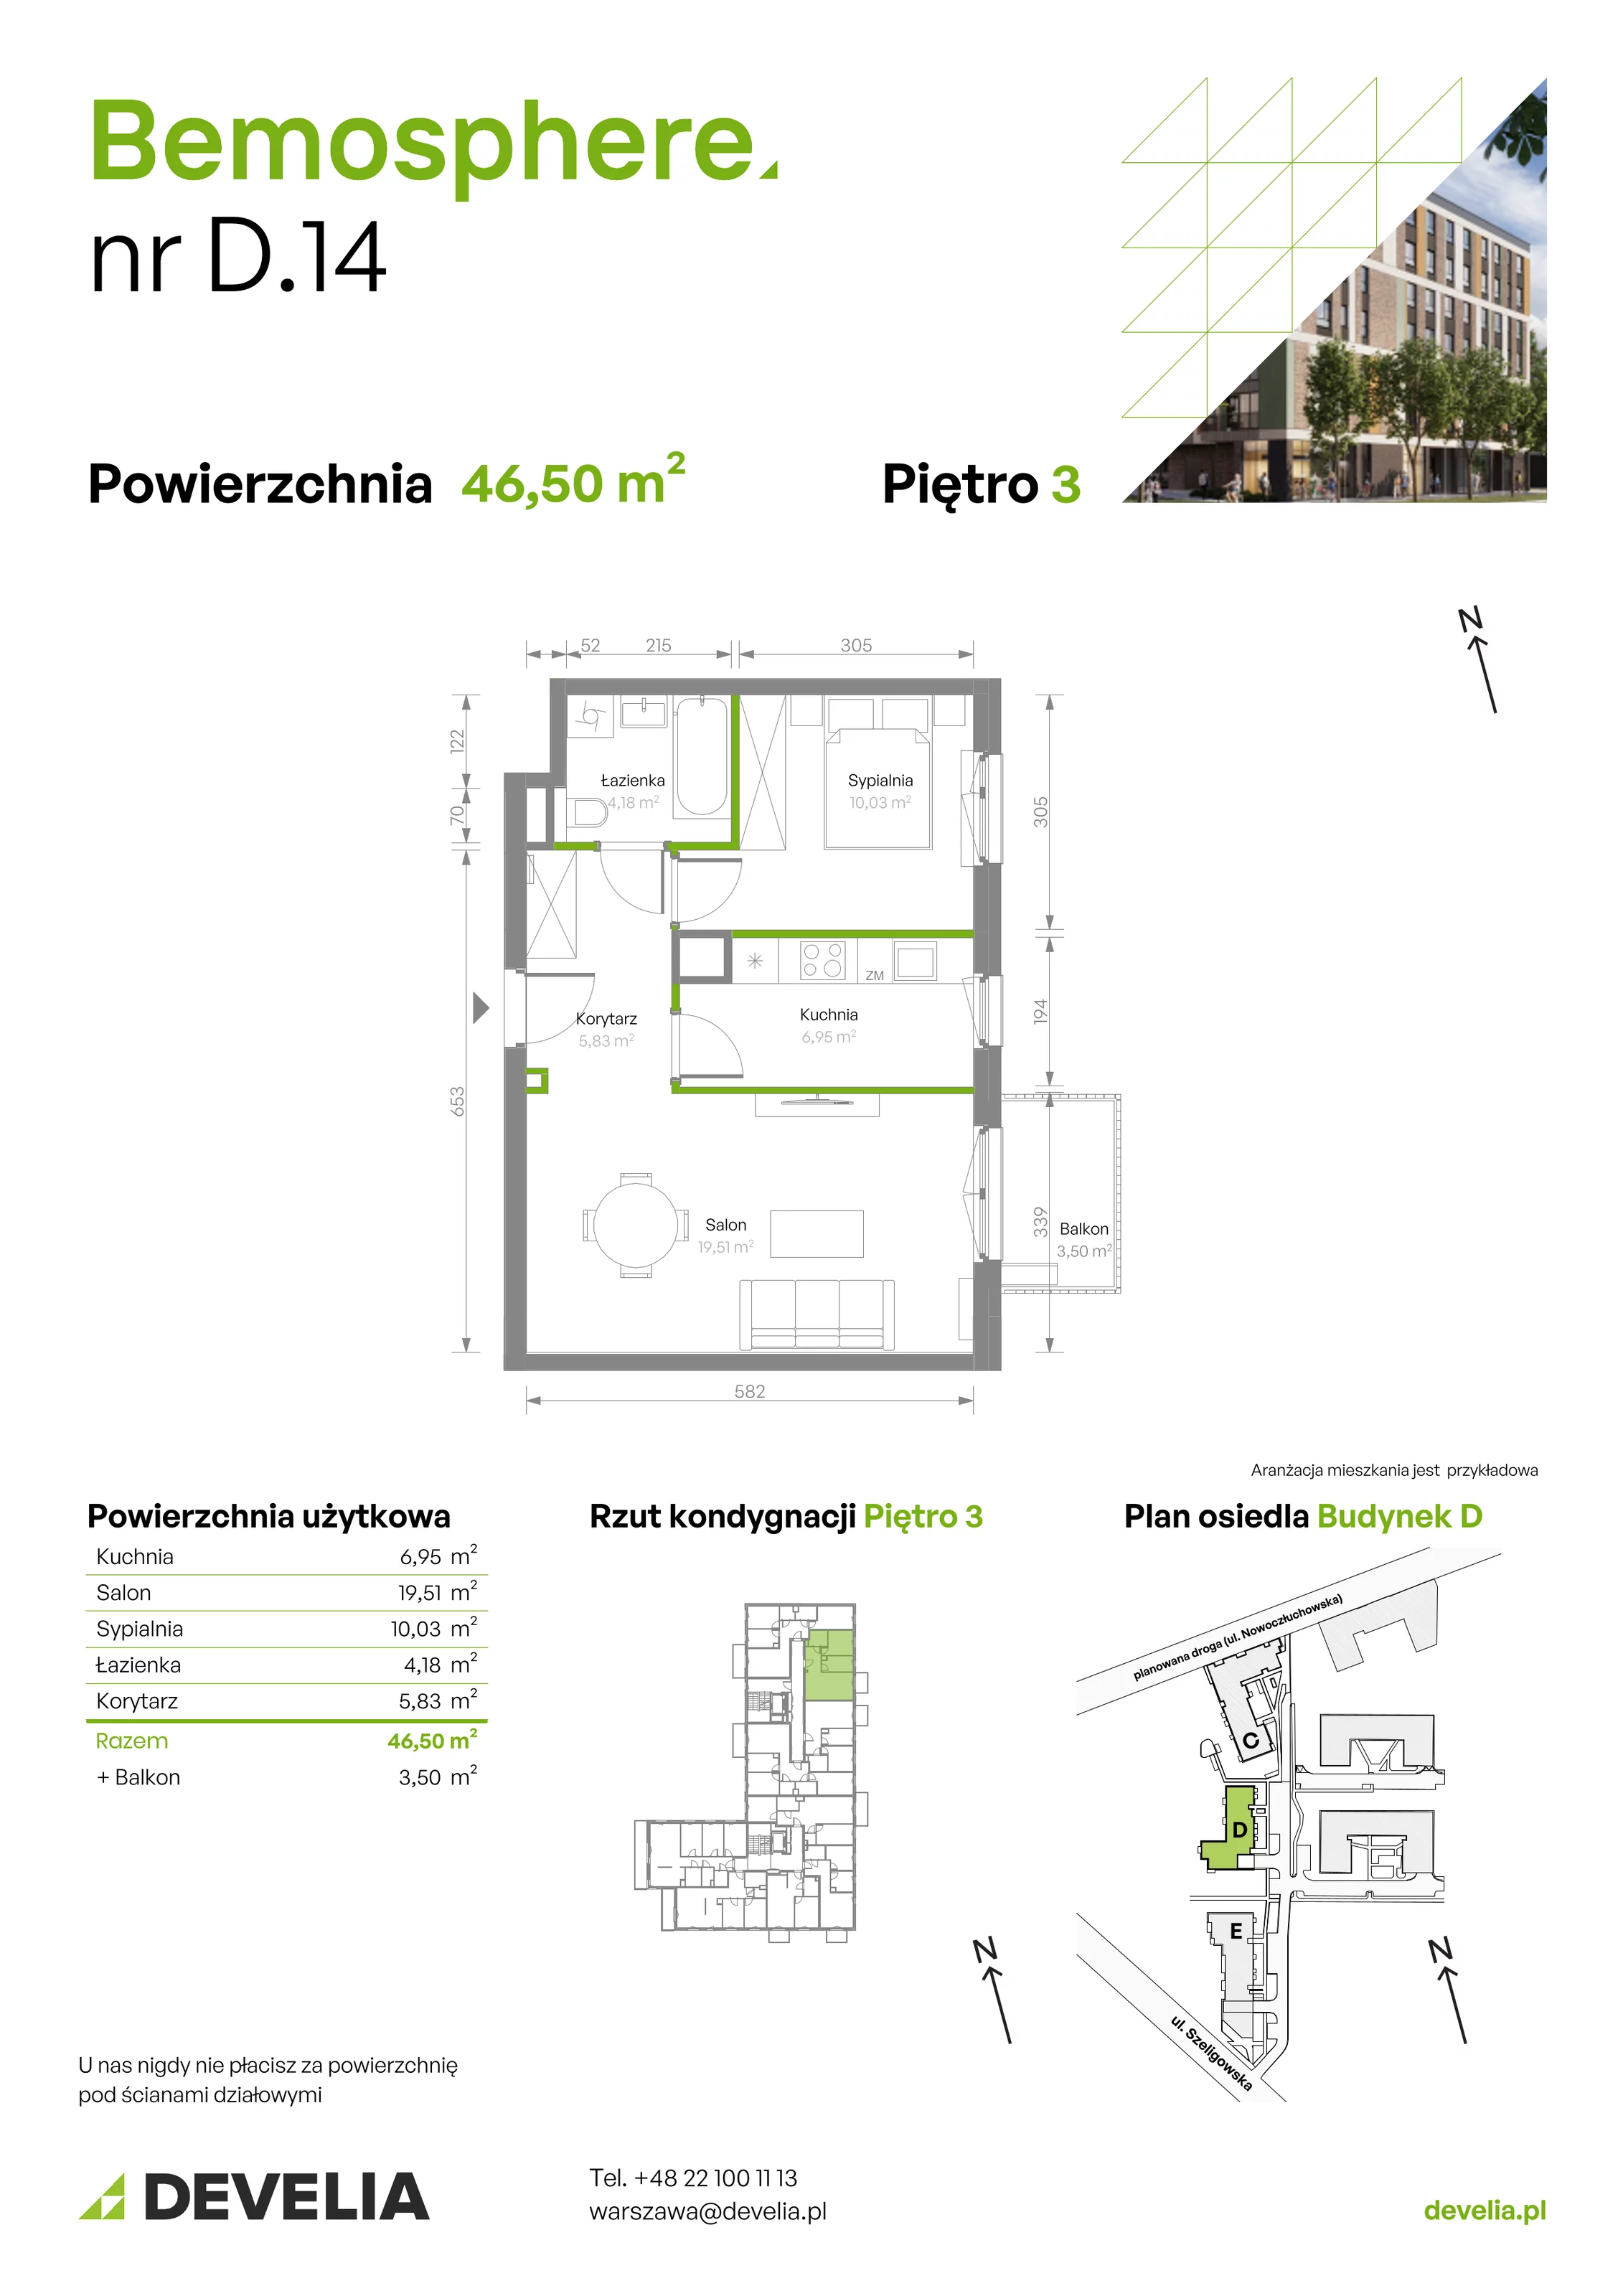 Mieszkanie 46,50 m², piętro 3, oferta nr D/014, Bemosphere, Warszawa, Bemowo, Chrzanów, ul. Szeligowska 24